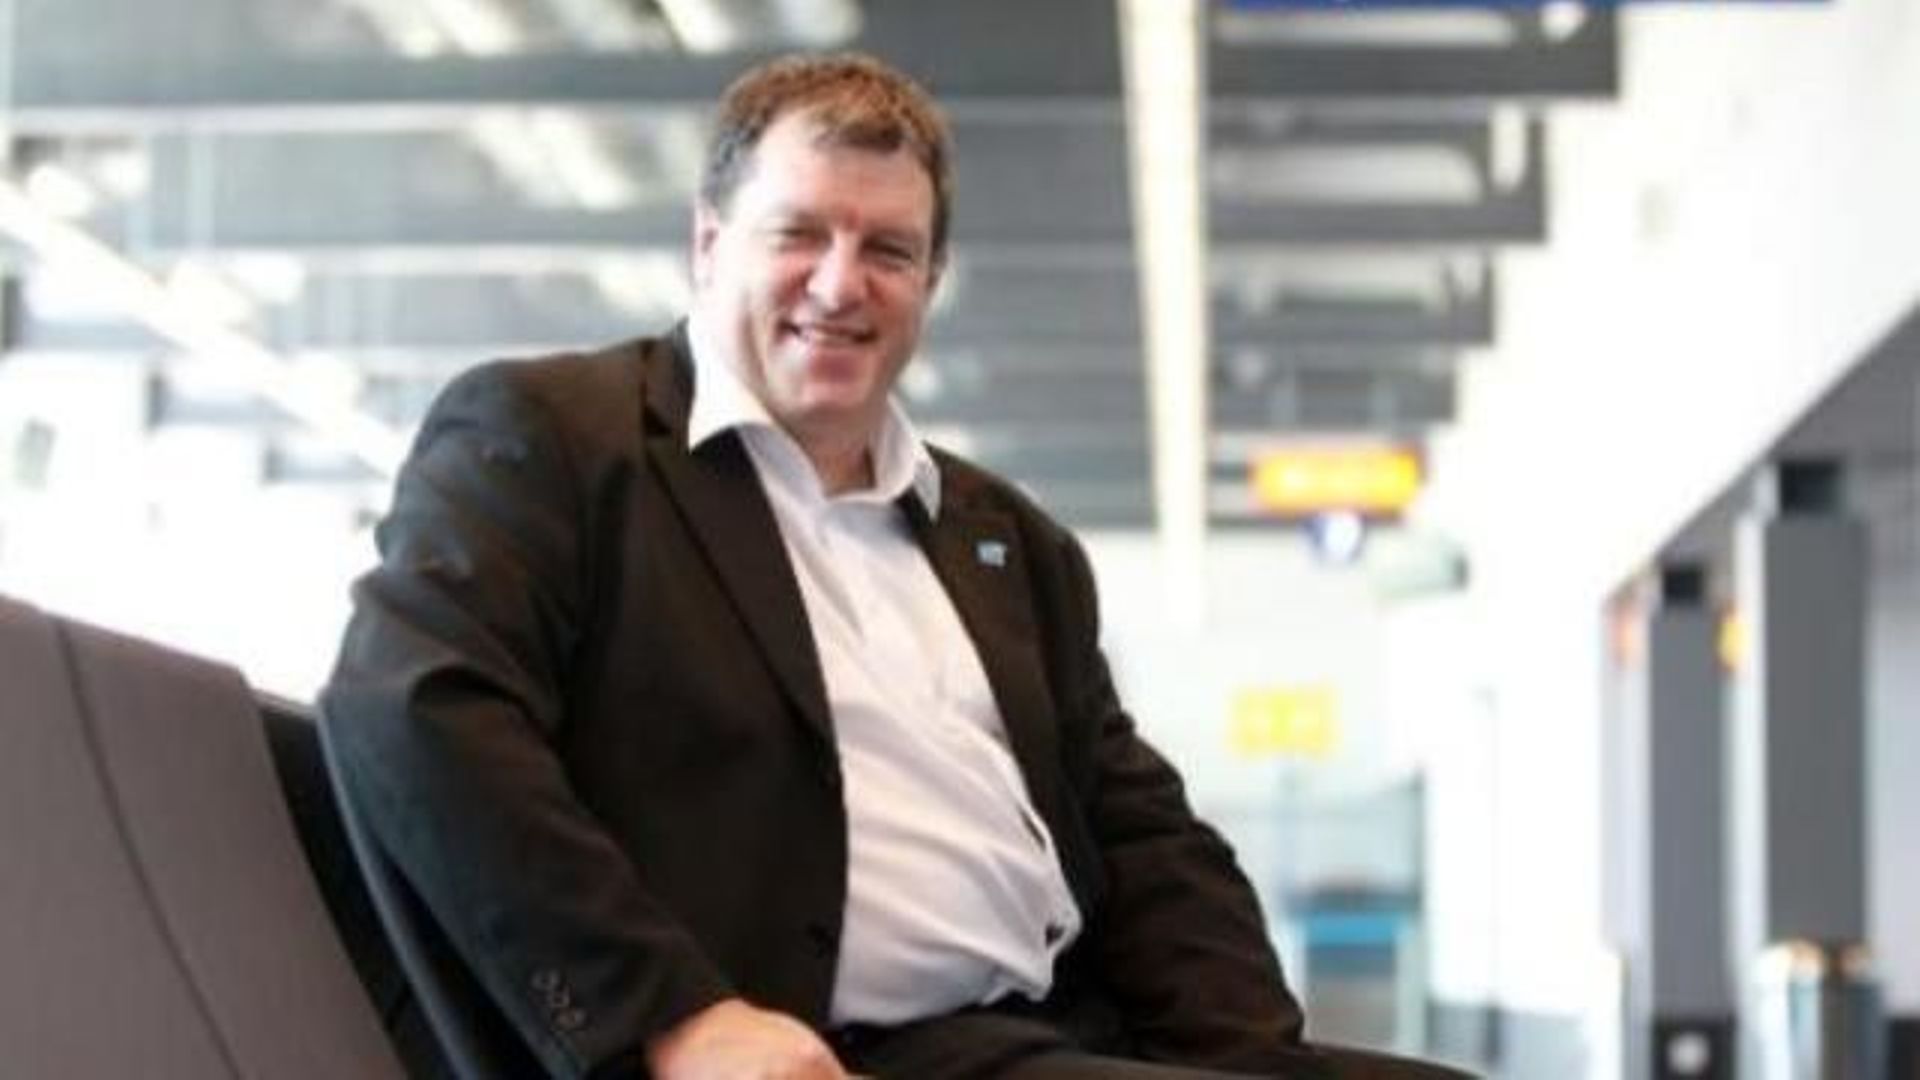 Le SEO de l'aéroport de Charleroi, Jean-Jacques Cloquet, met en cause le sérieux de certains gestionnaires de la Commission Européenne